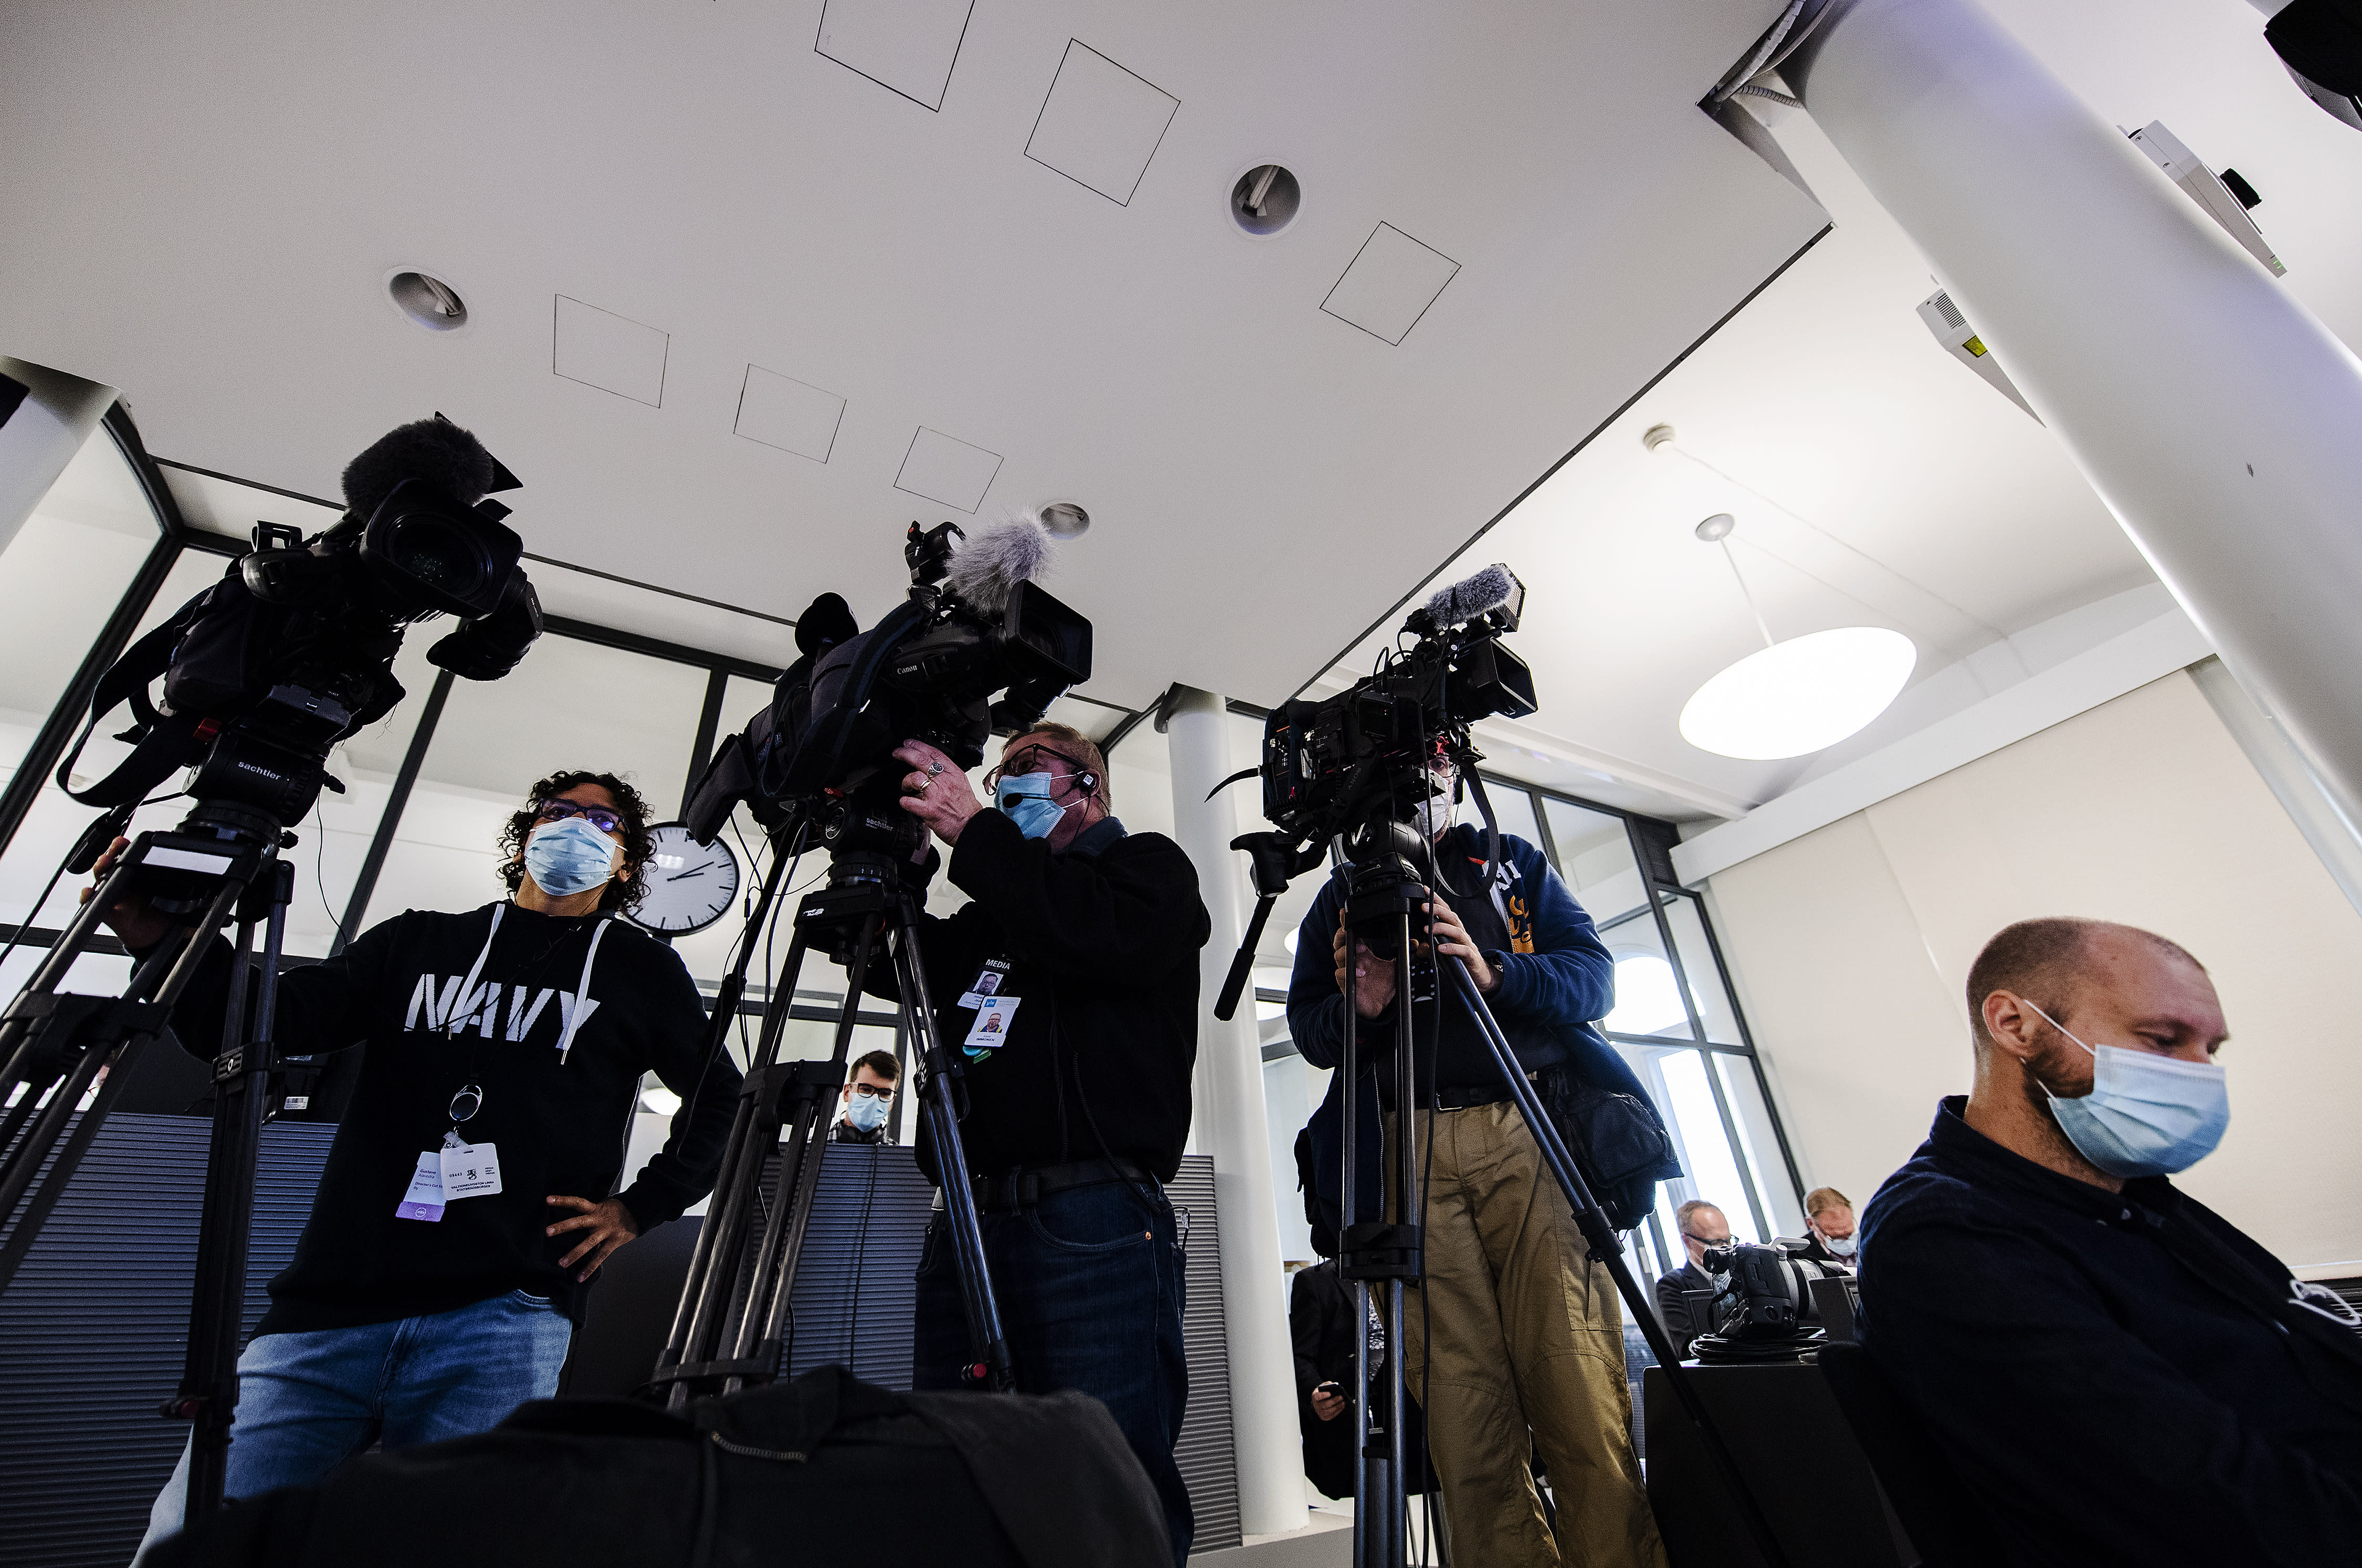 Suomi auf lehdistönvapaudessa toisella sijalla, mutta vihapuhe verkossa kasvava uhka